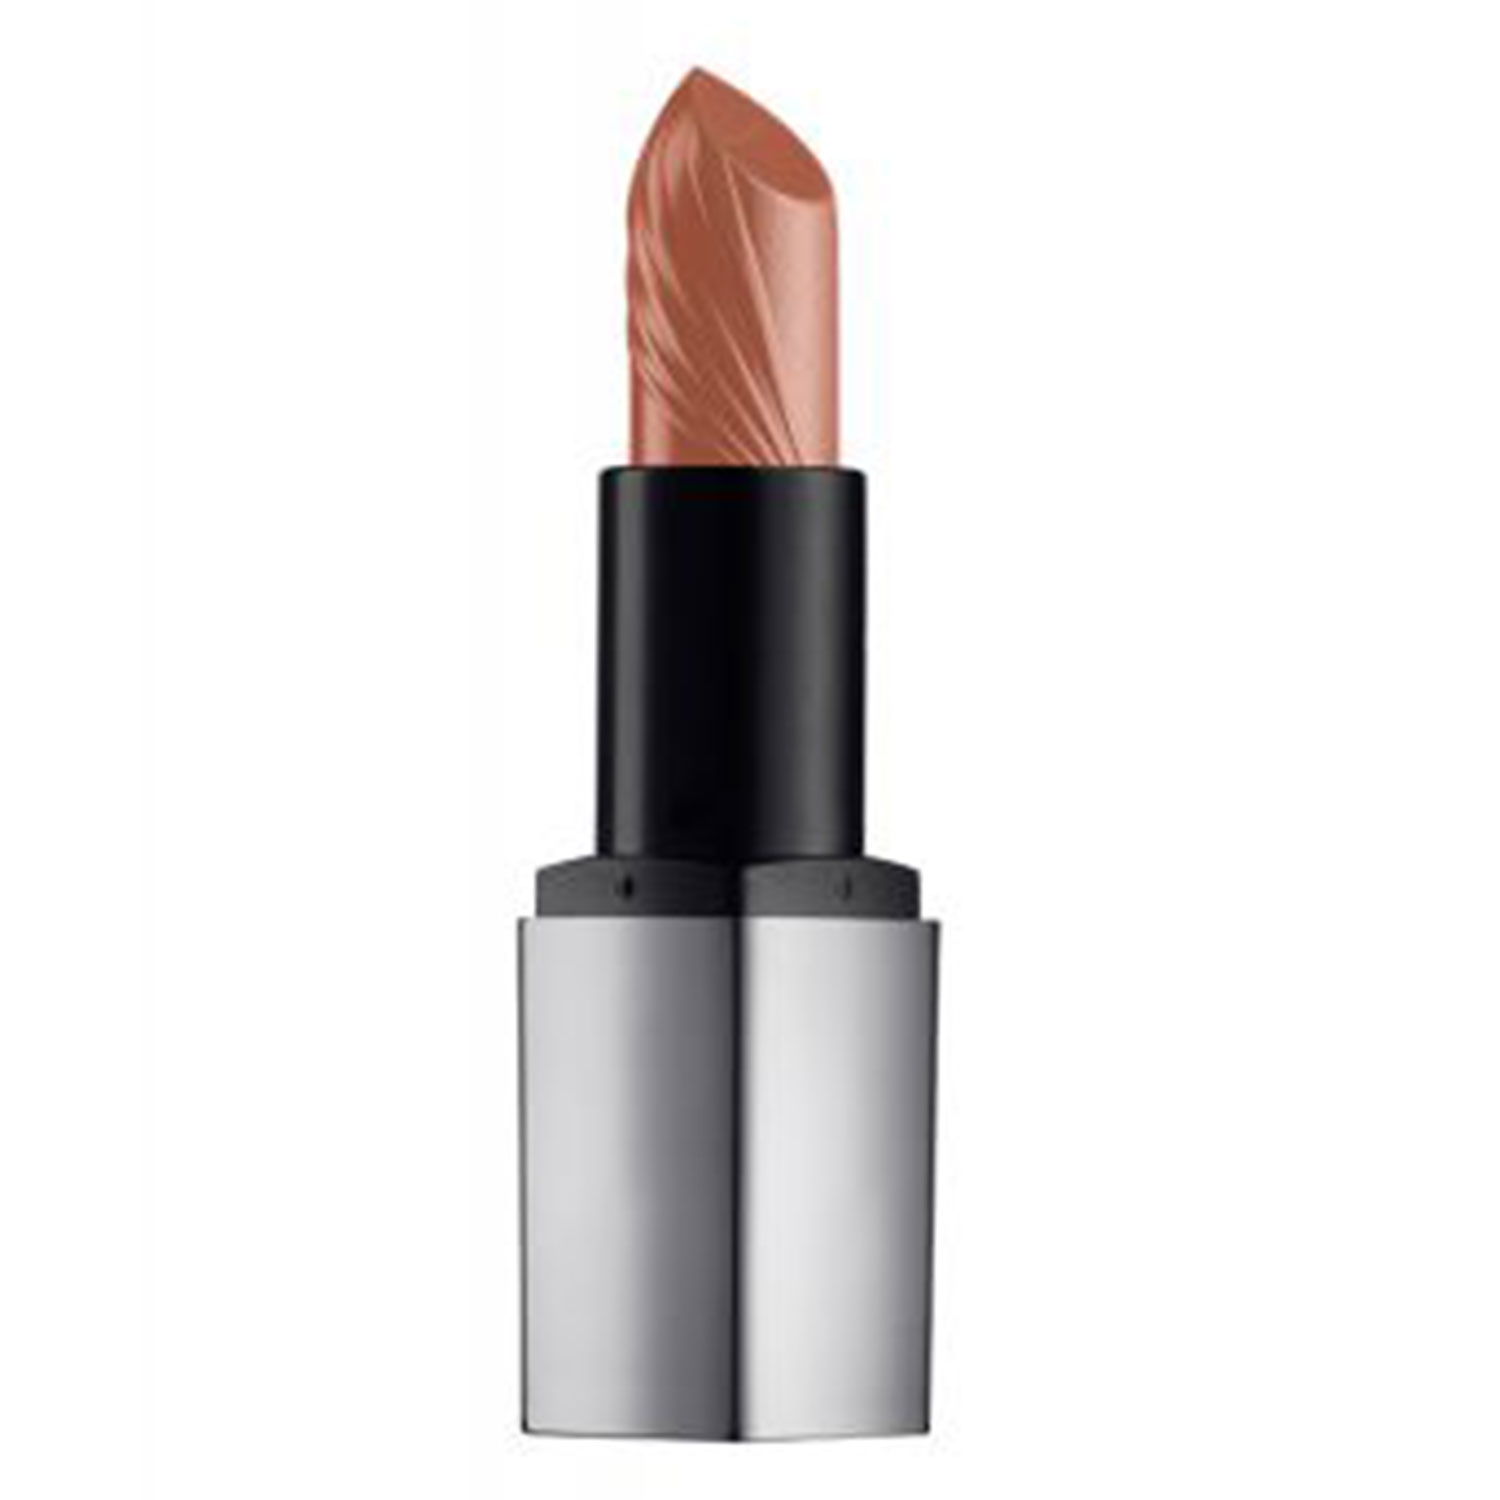 Produktbild von Reviderm Lips - Mineral Boost Lipstick Ballerina 0N